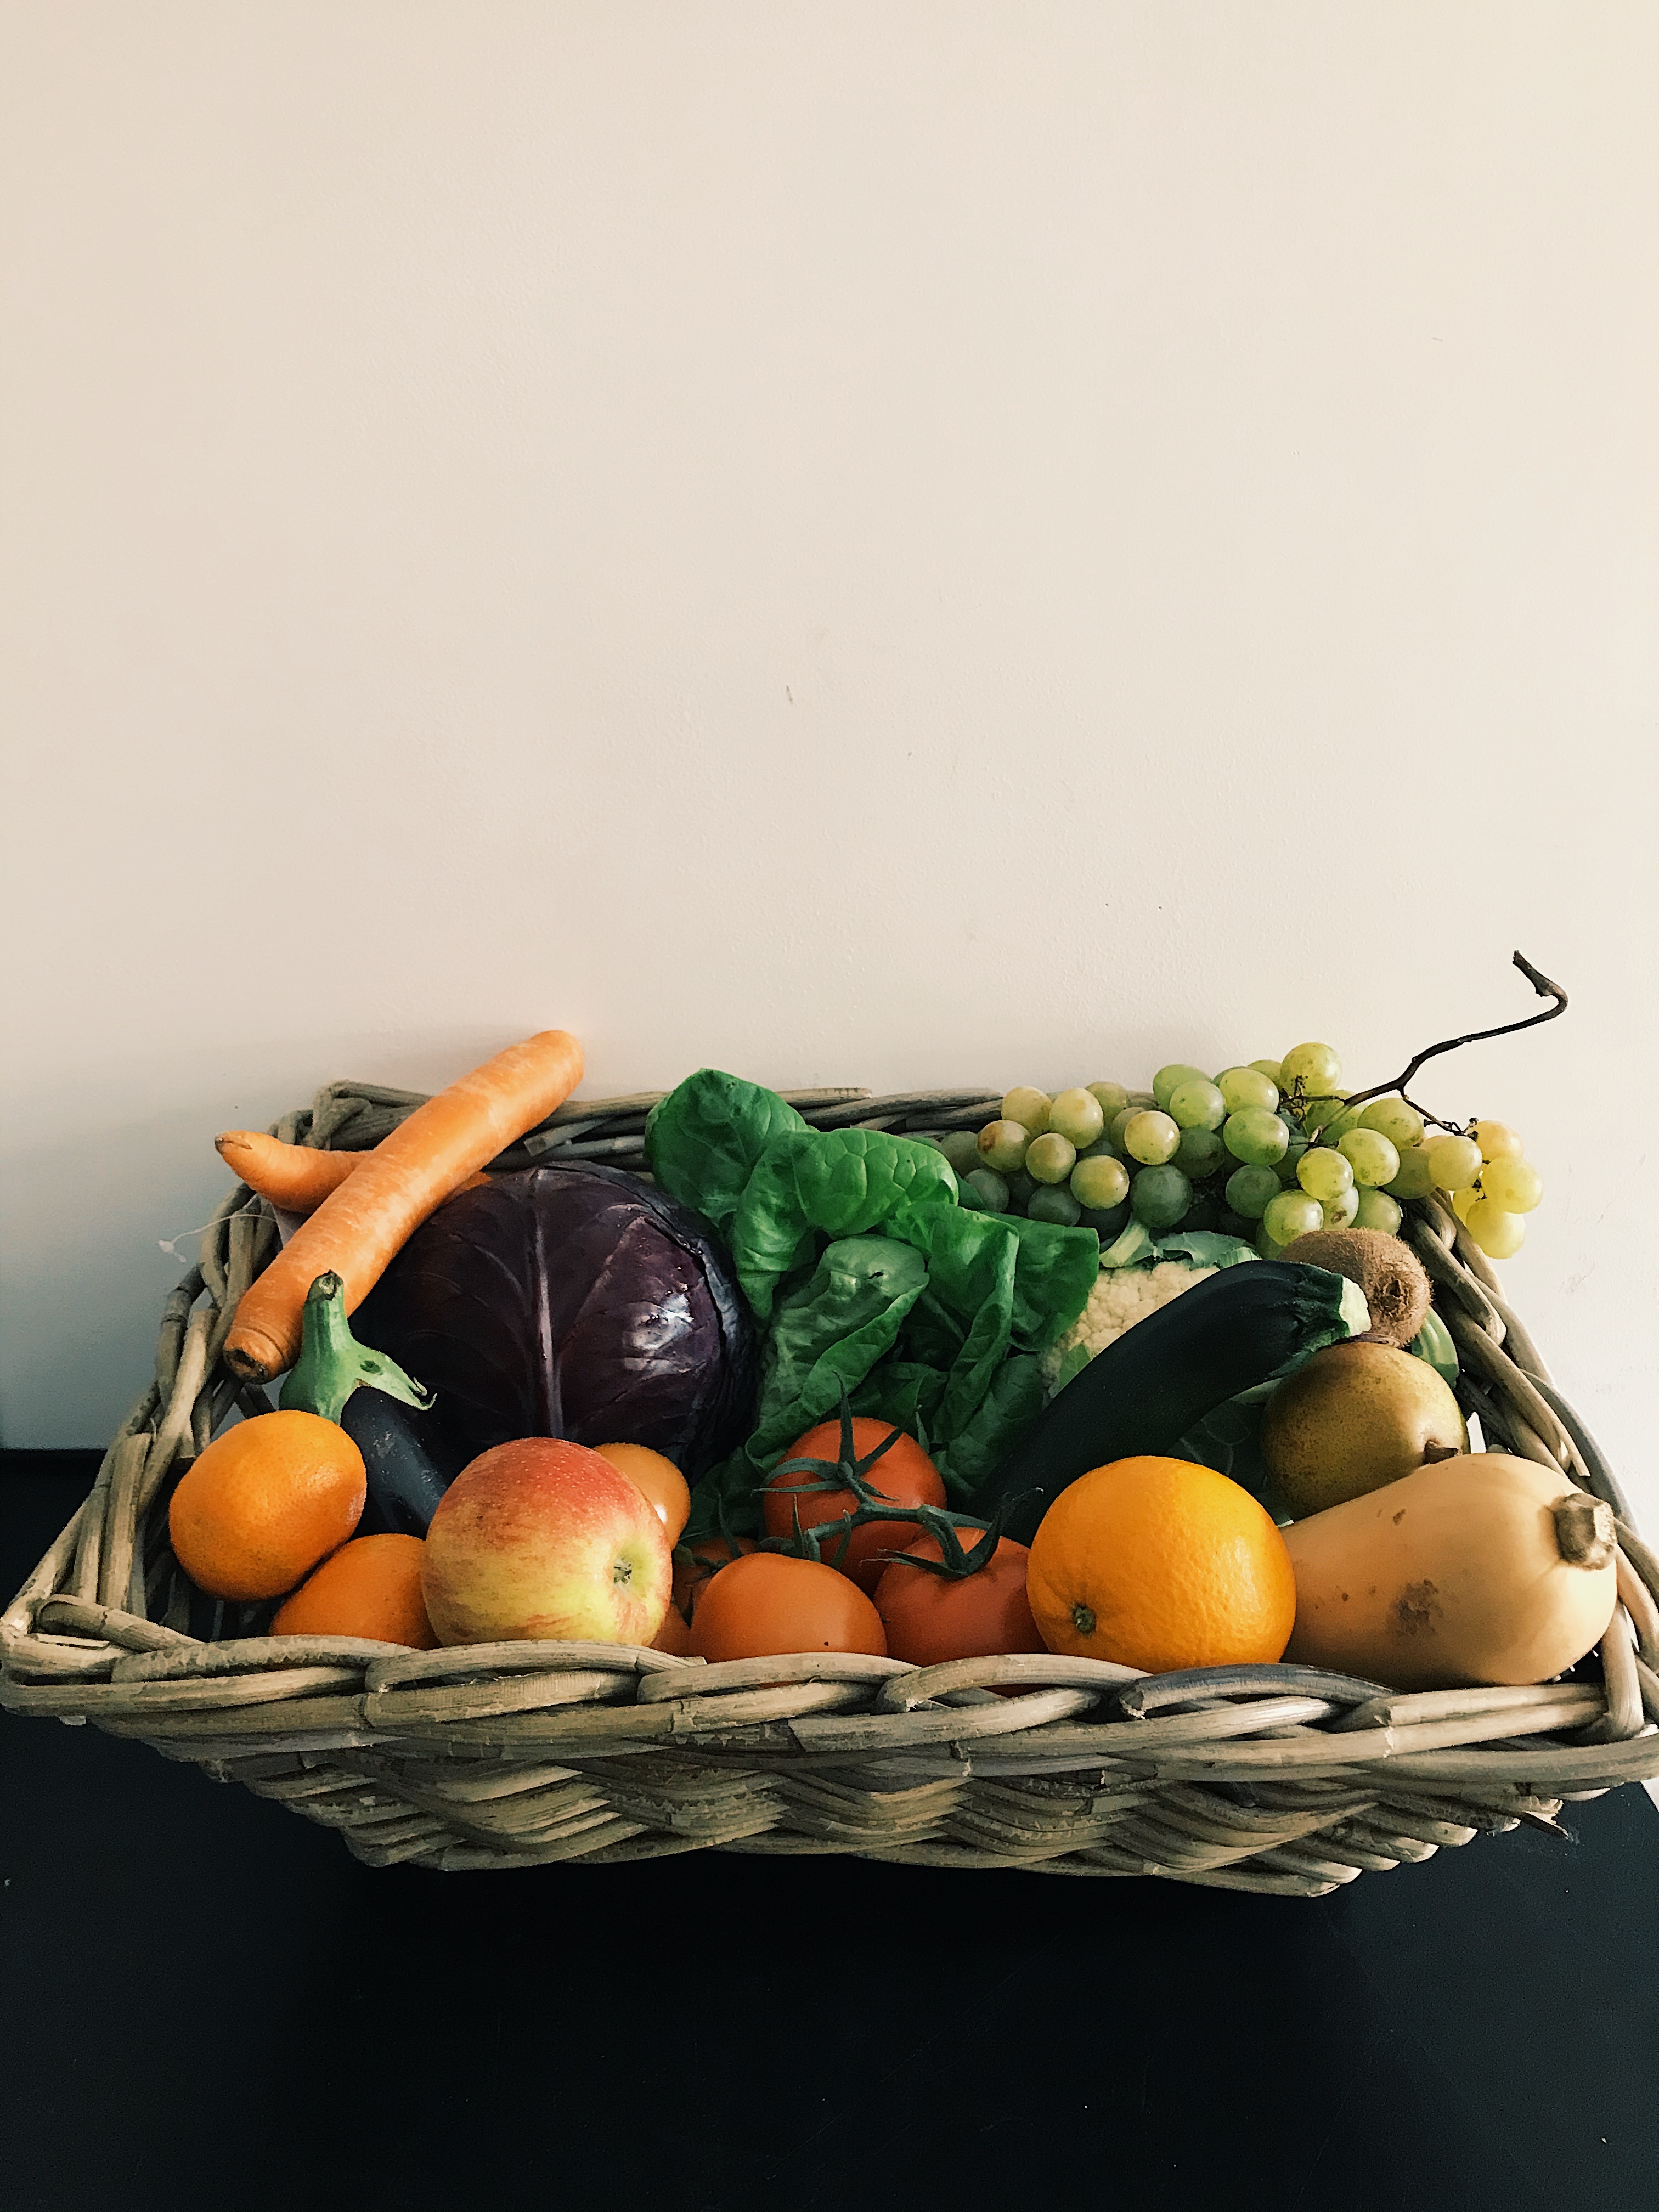 Uw selectie groenten en fruit en andere producten van de winkel